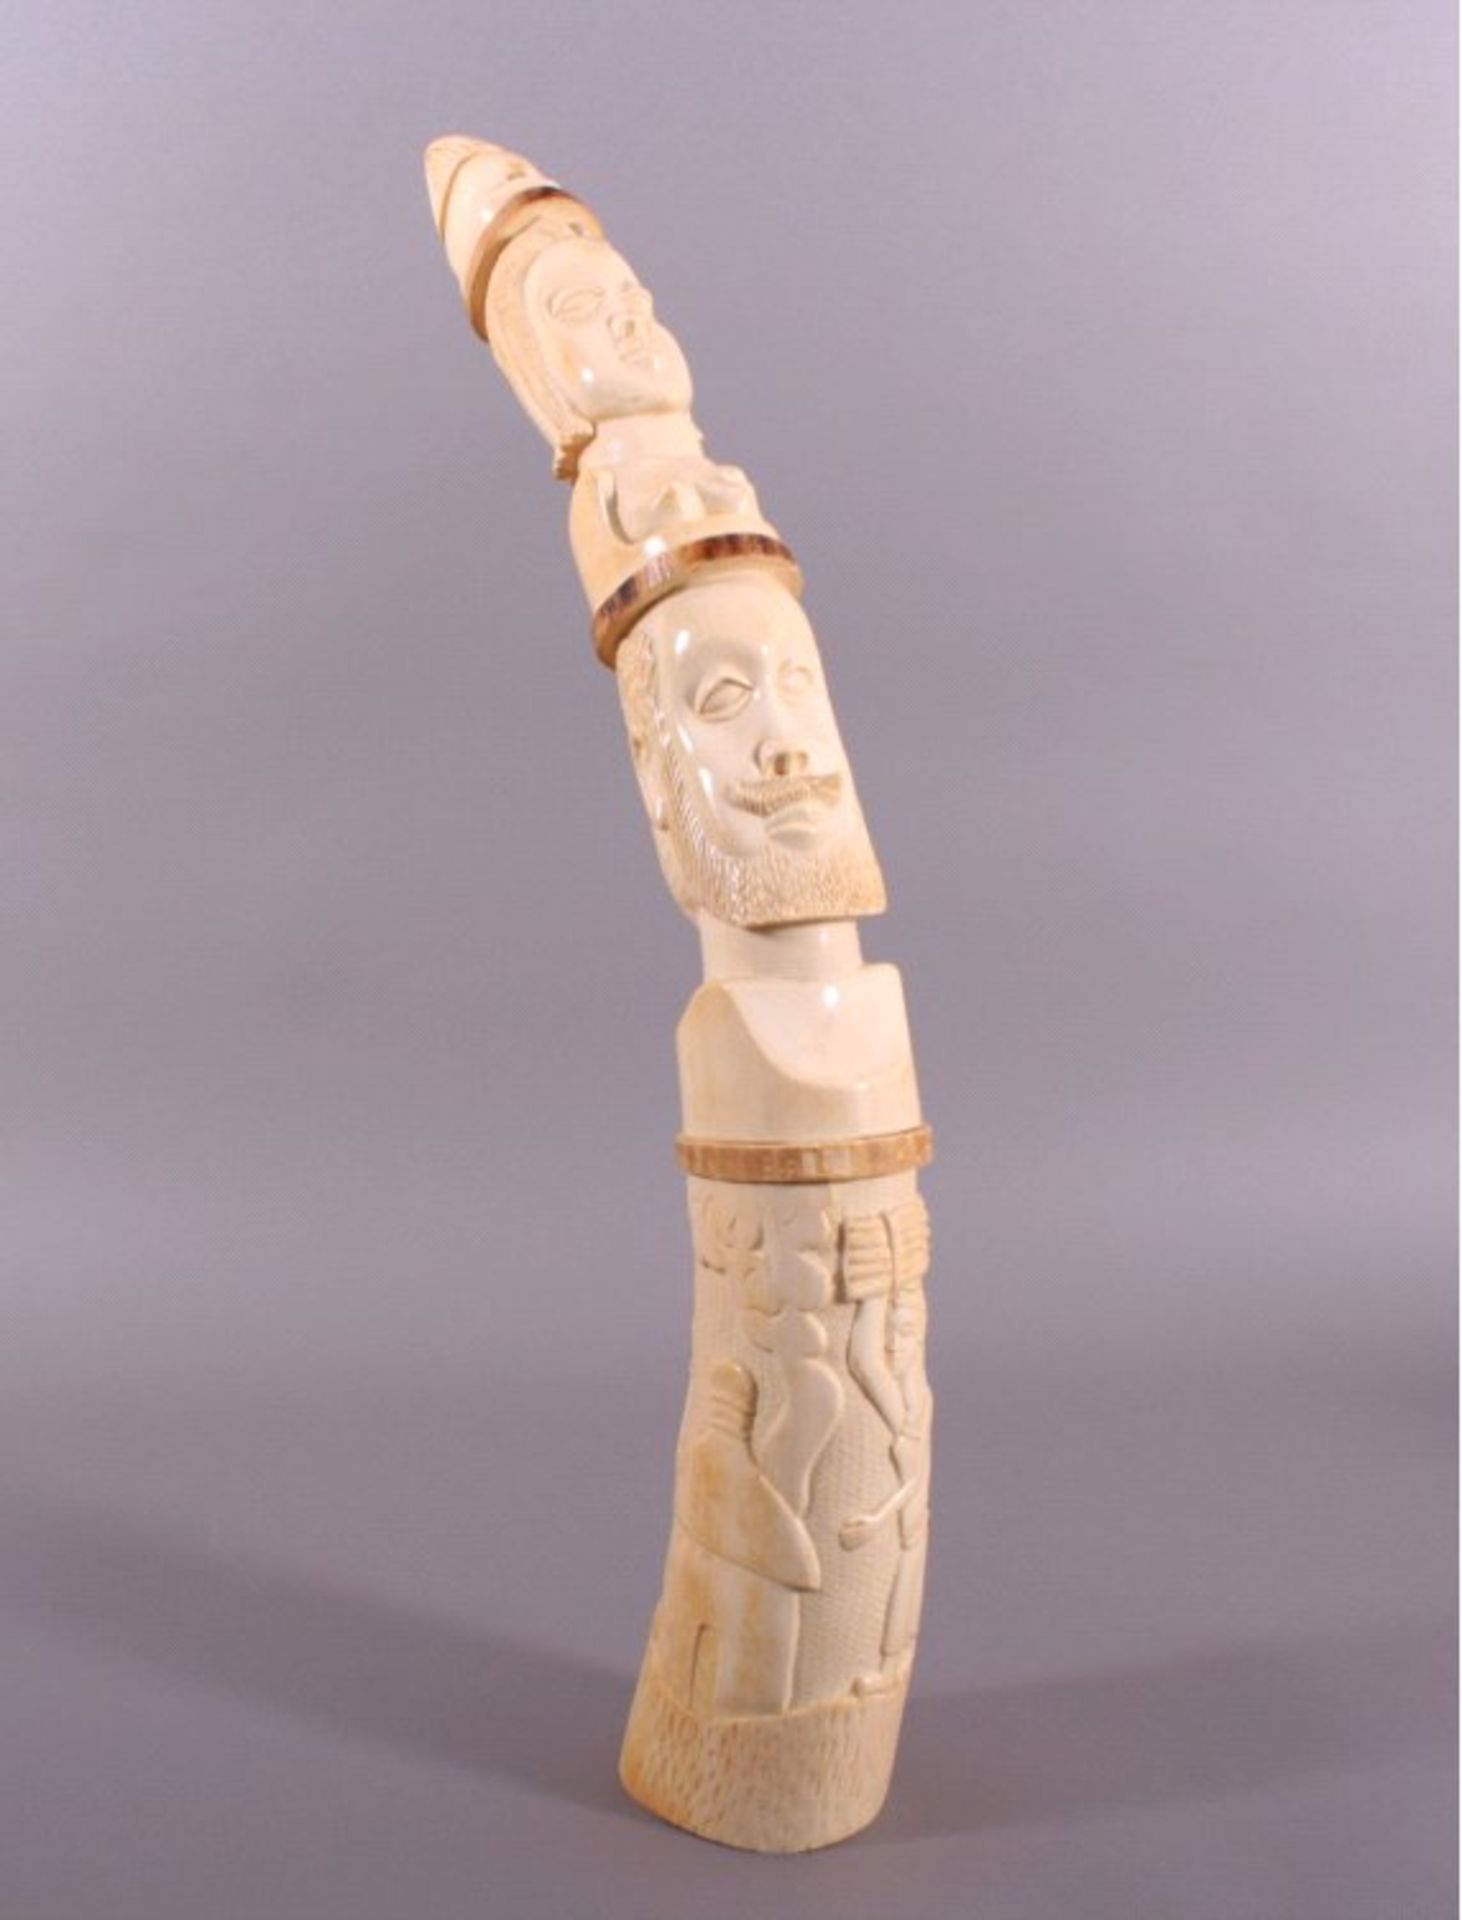 Afrikanischer Stoßzahn um 1900umlaufend schöne Schnitzarbet, ca. H-76 cm, 4,6 Kg.Mindestpreis: